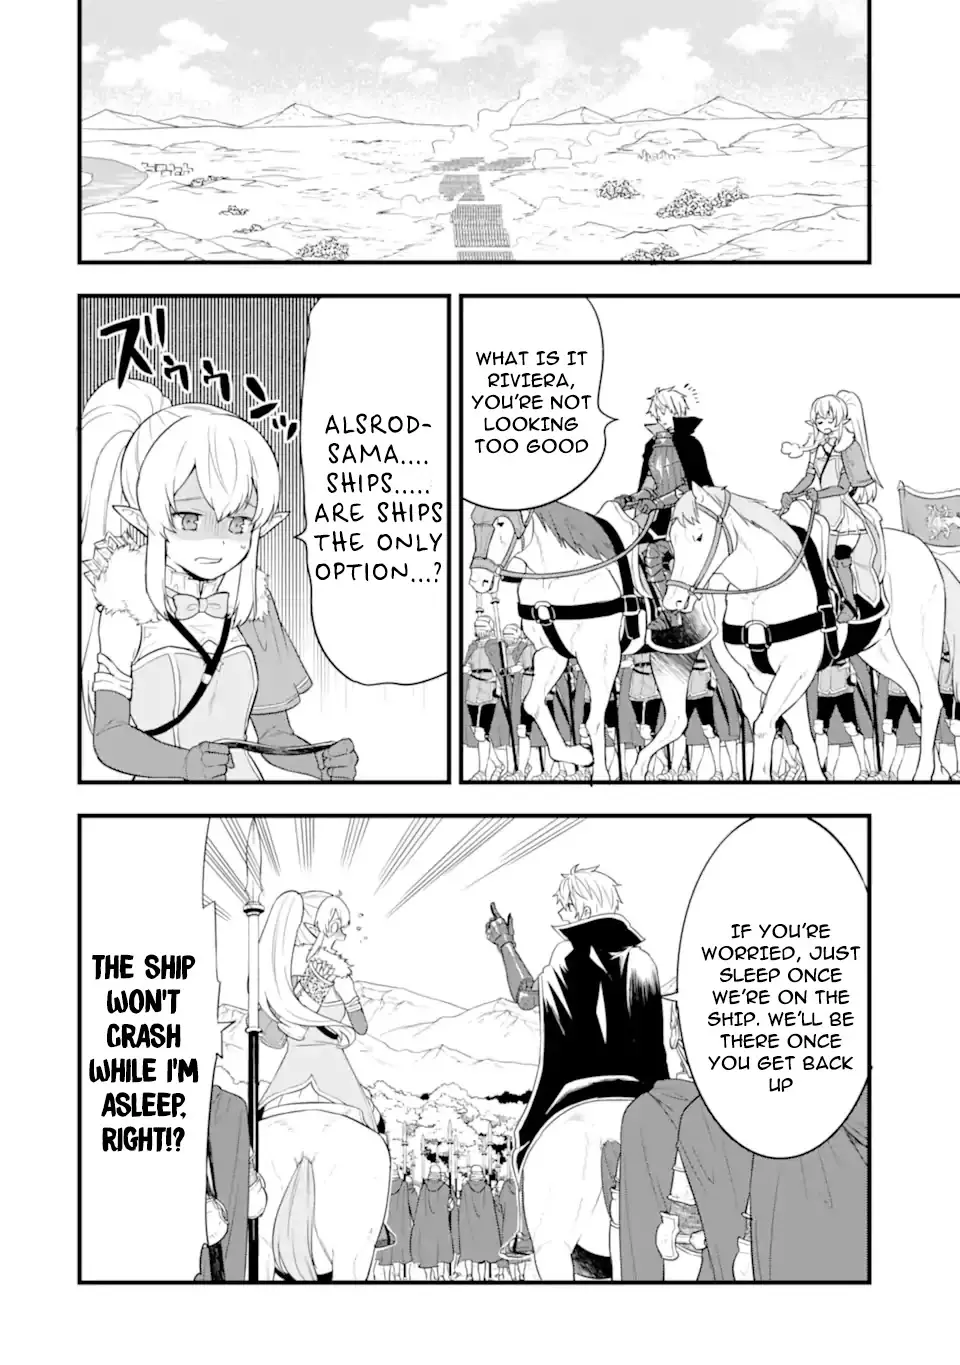 Mysterious Job Called Oda Nobunaga - 36 page 30-98416d76